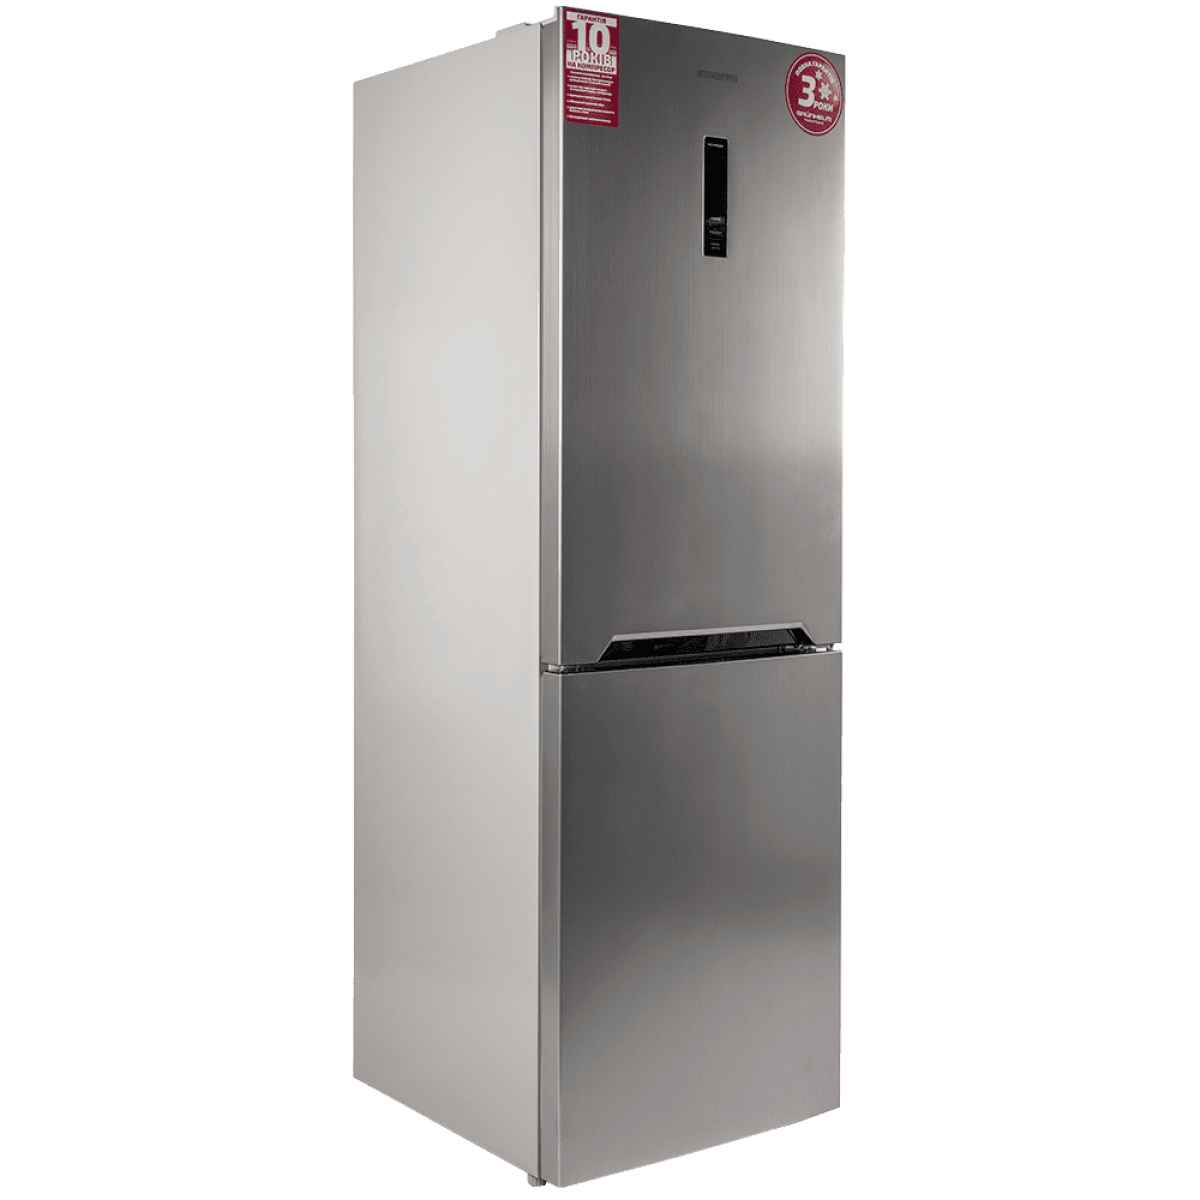 Двухкамерный холодильник Grunhelm GNC-185HLX2